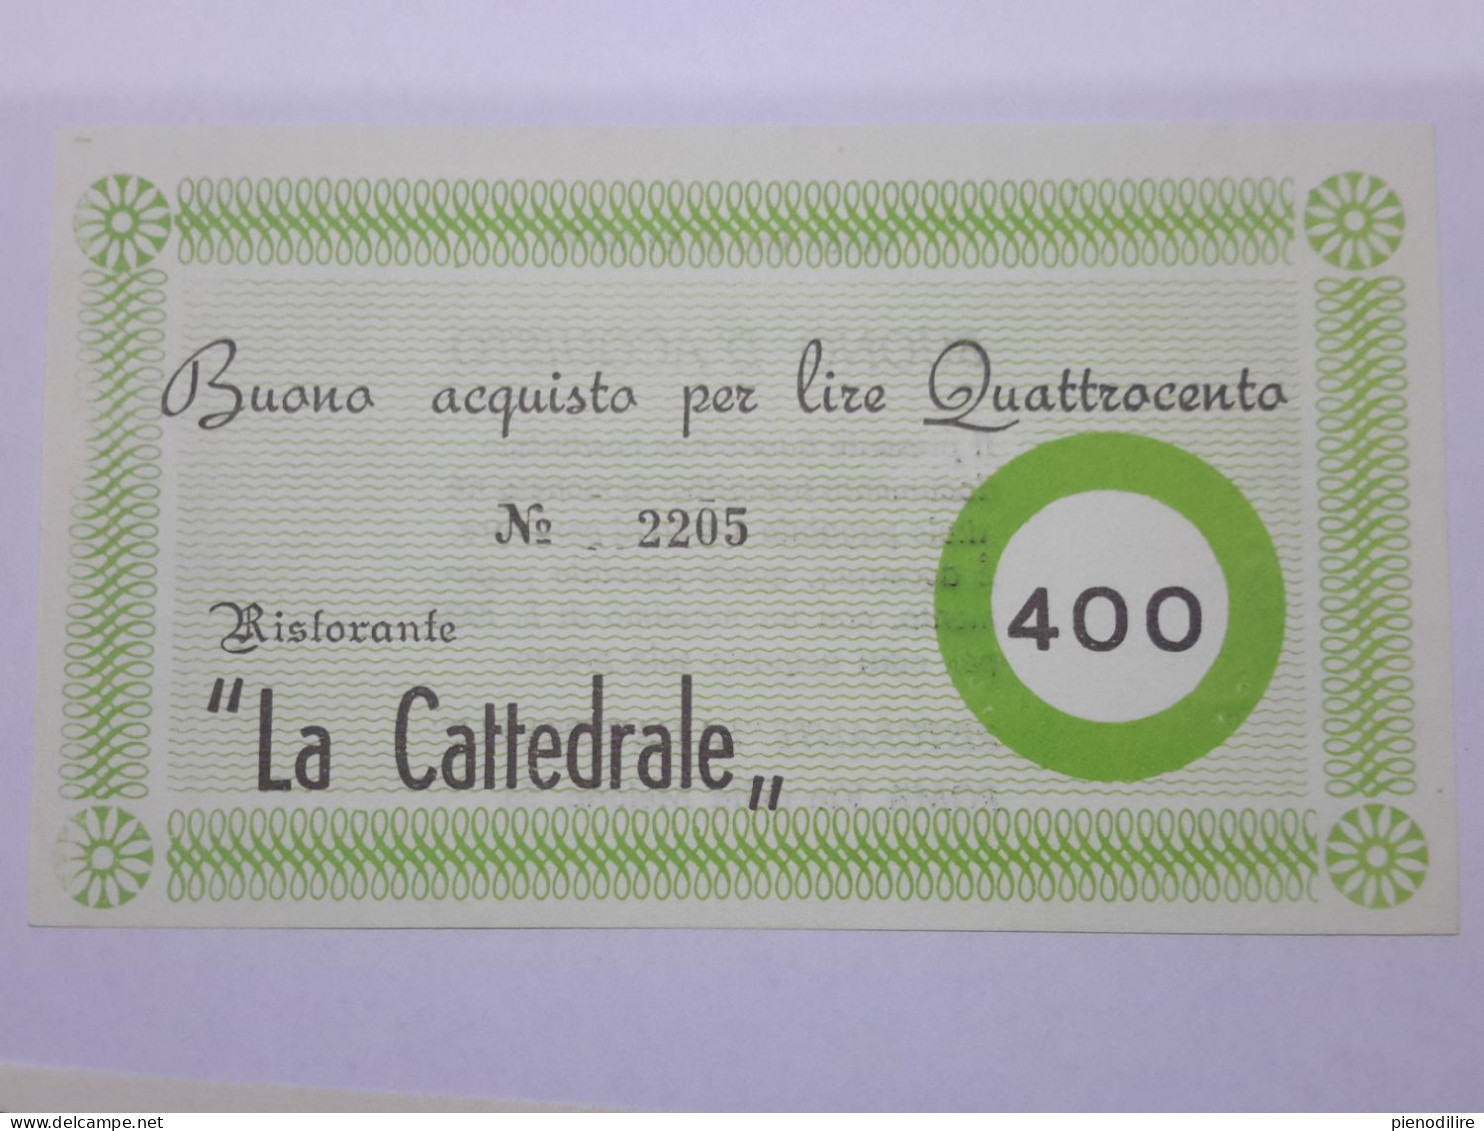 LOTTO 4Pz. 100 200 300 400 LIRE BUONI ACQUISTO RISTORANTE LA CATTEDRALE ROMA VALIDO FINO AL 31.12.1976 (A.4) - [10] Cheques Y Mini-cheques